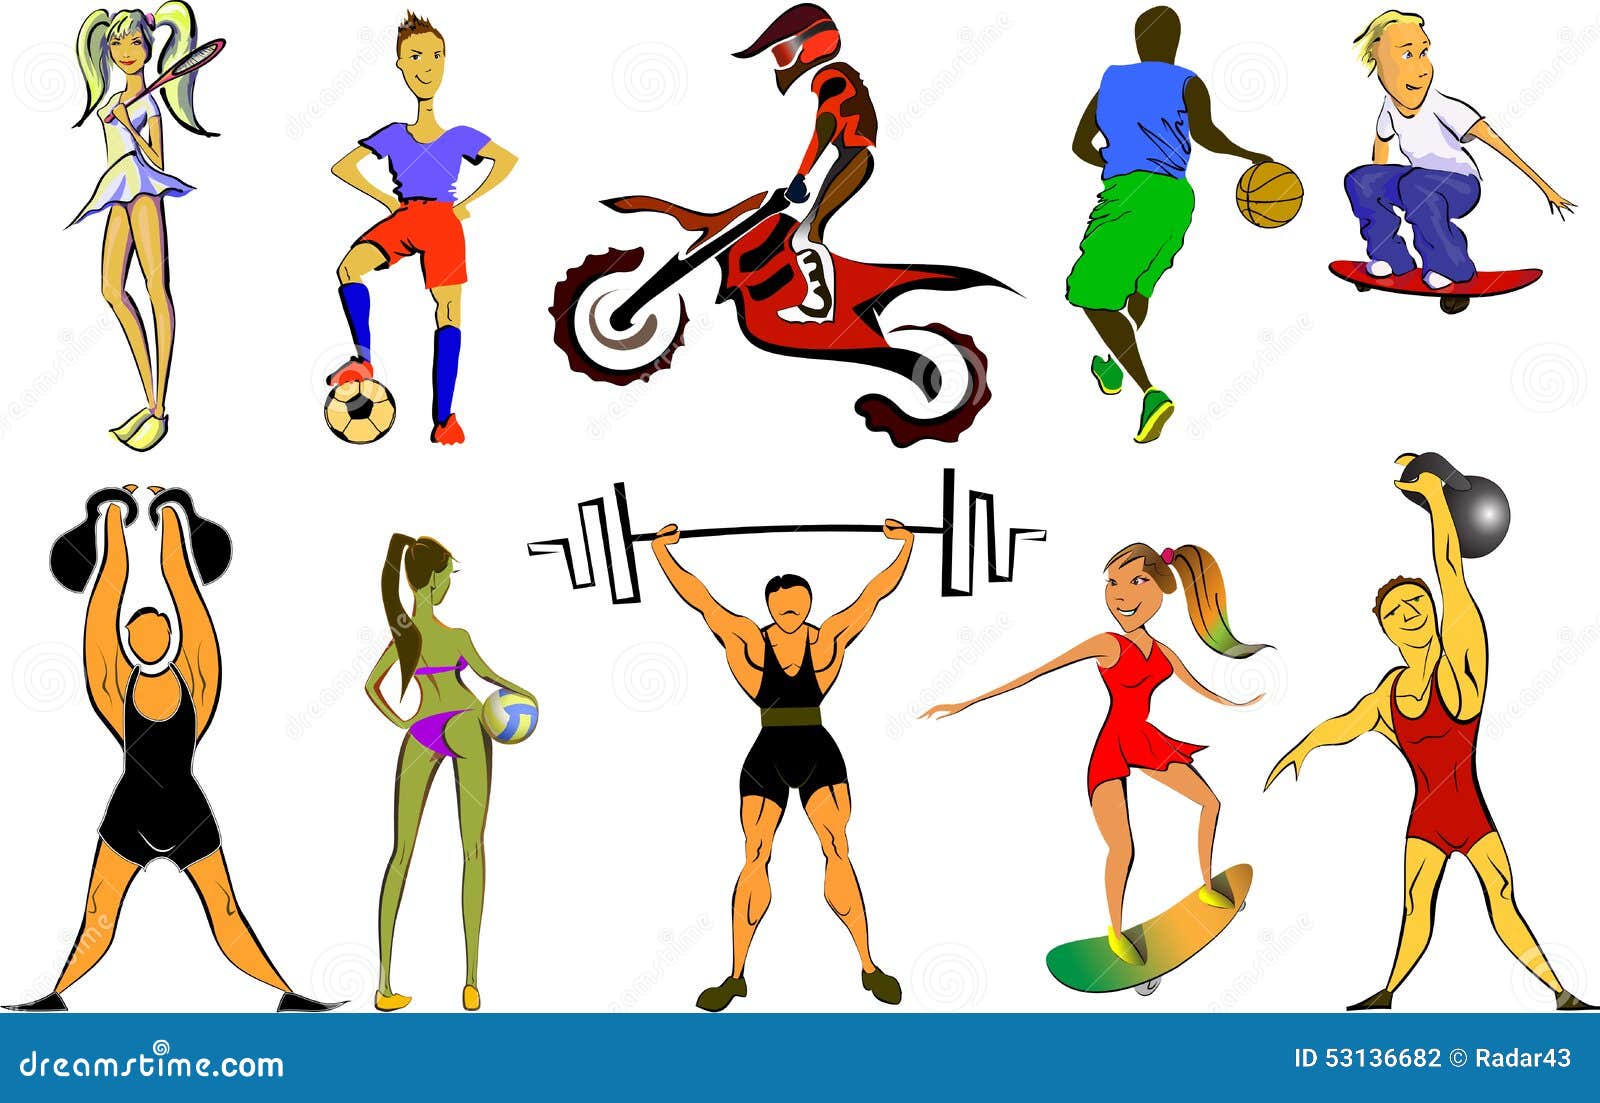 Different kind of sport. Изображения разных видов спорта. Разные виды спорта картинки. Спортивные рисунки. Рисунки спортсменов разных видов спорта.